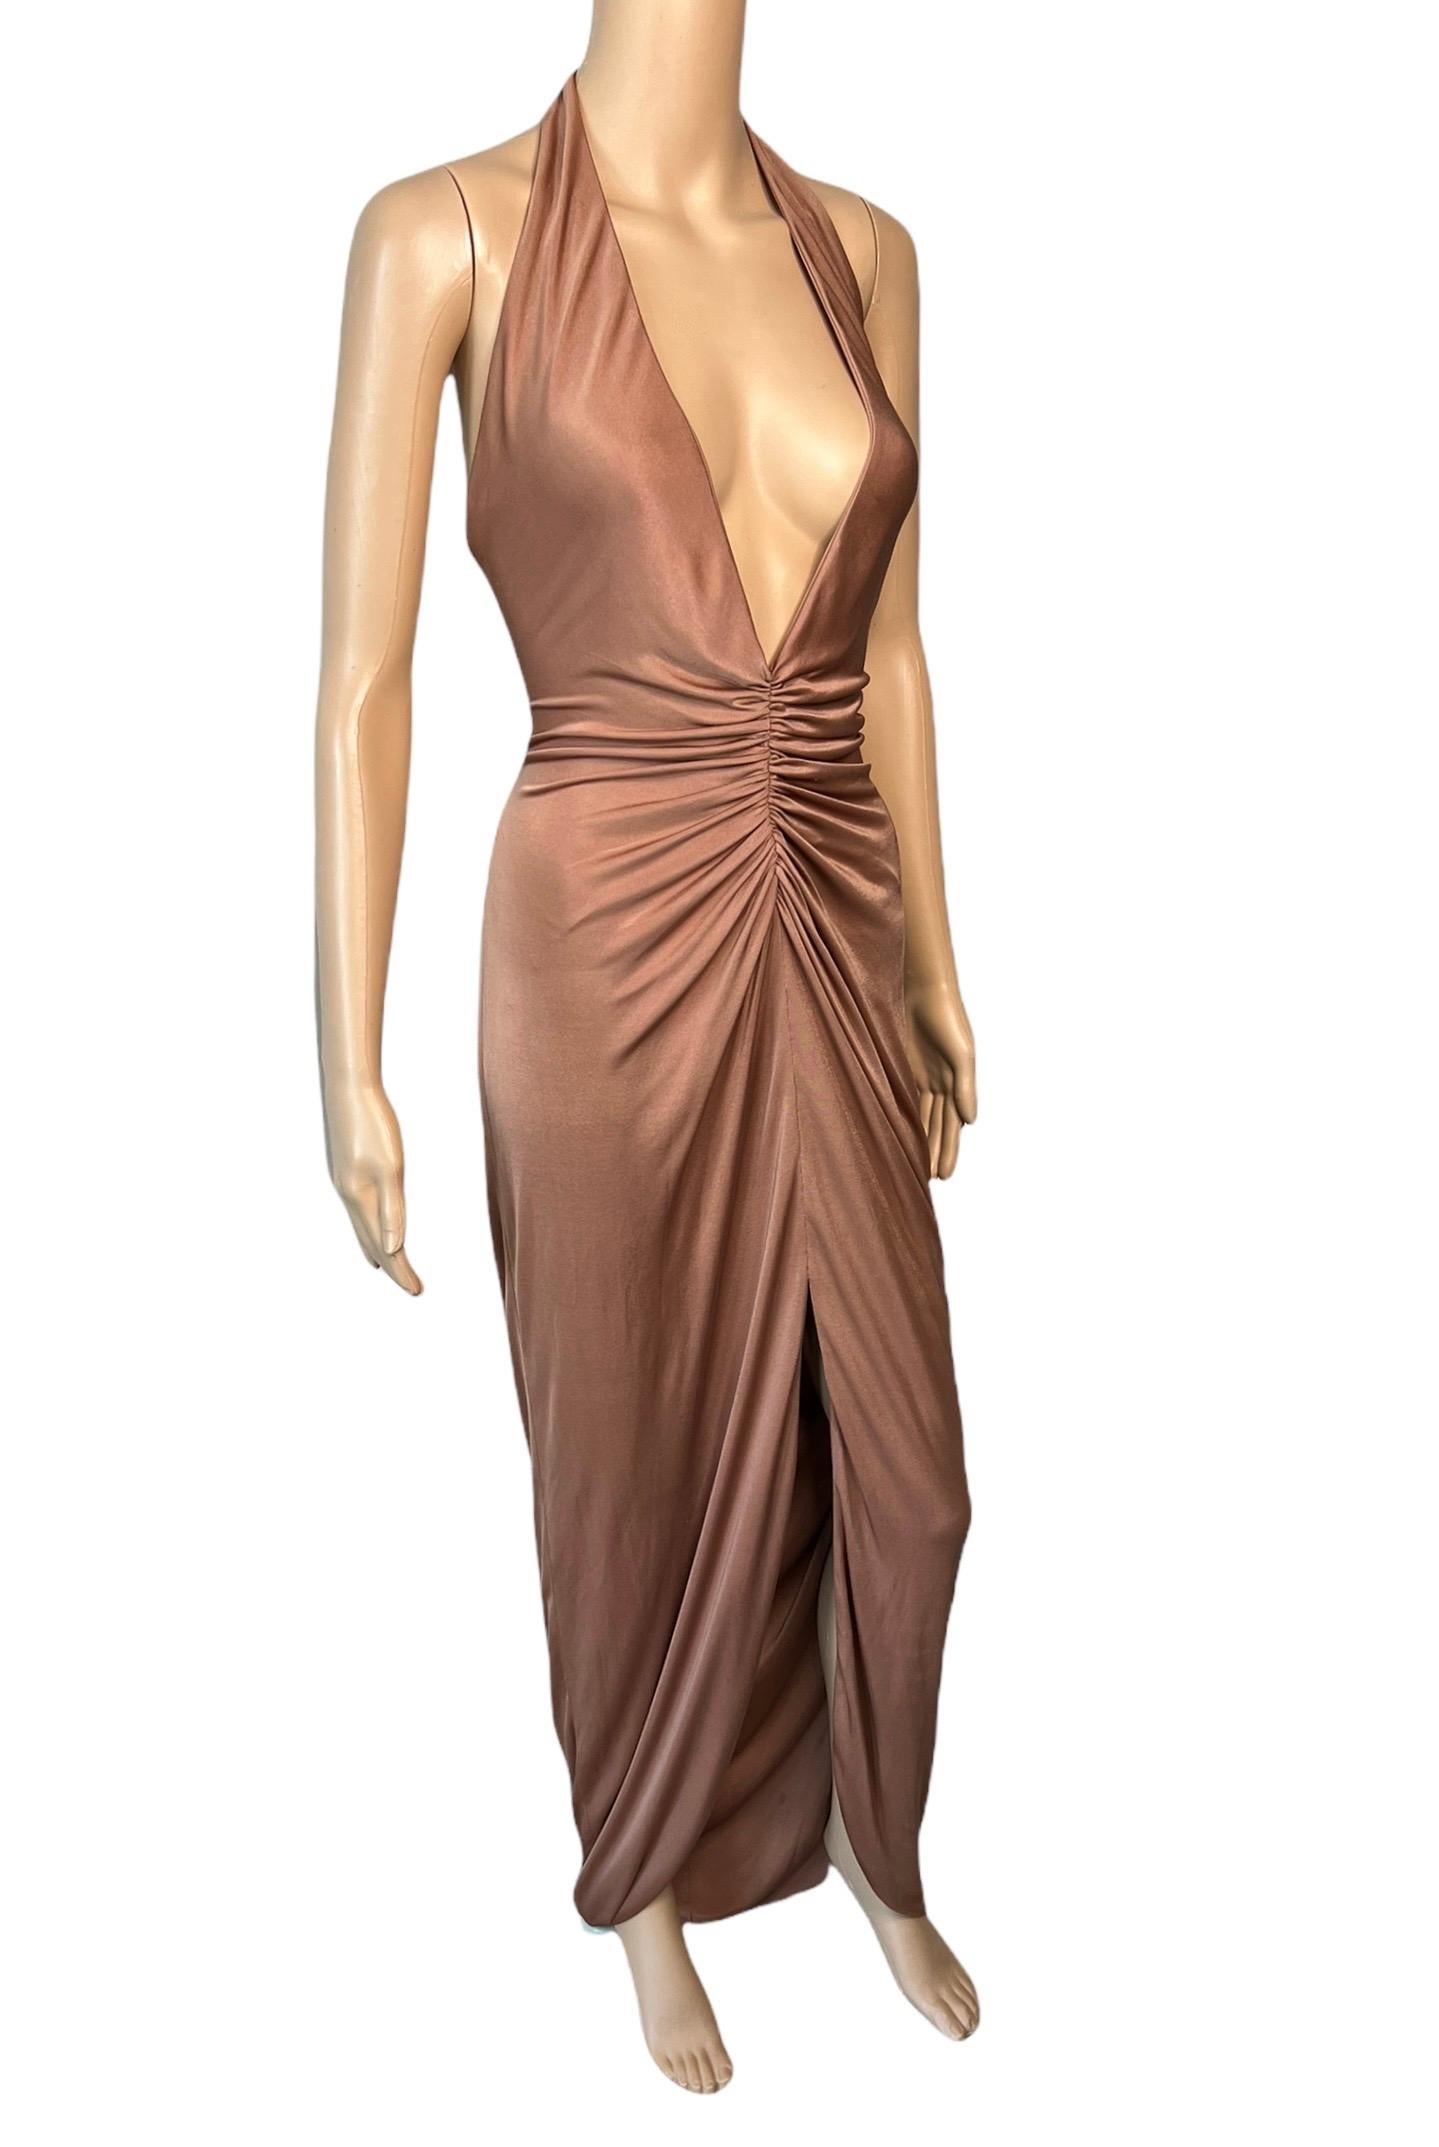 Versace S/S 2005 Laufsteg Tief ausgeschnittenes gerafftes Abendkleid mit offenem Rücken IT 44

Look  49 aus der Frühjahrskollektion 2005.

